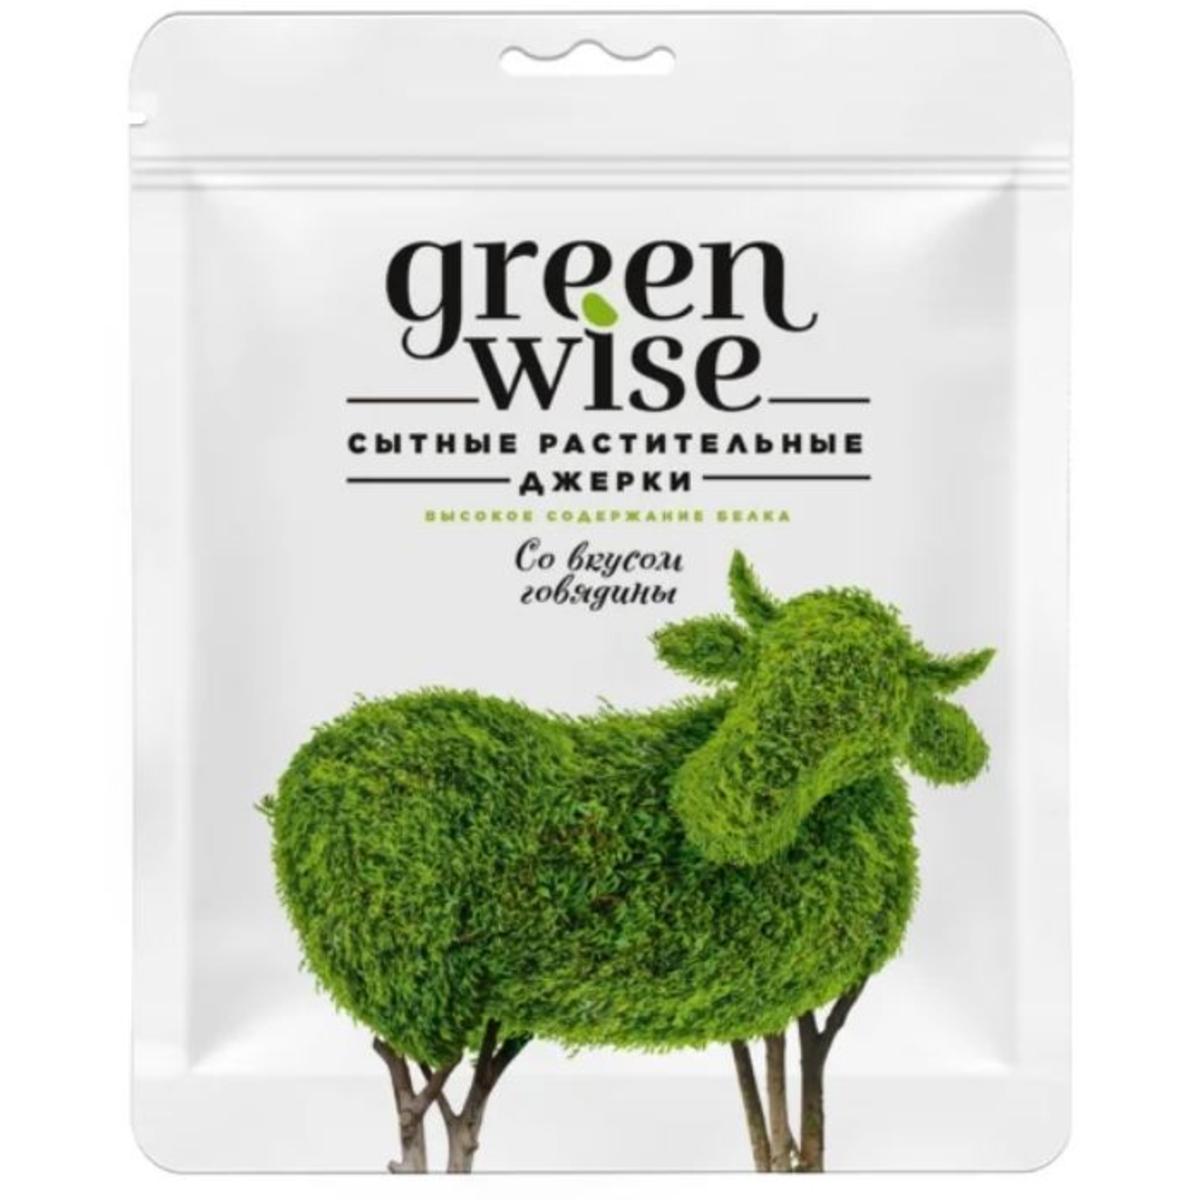 Greenwise. Green Wise растительные джерки со вкусом говядины 36 г. Растительные джерки Greenwise со вкусом белых грибов 36 г. Грин Вайс джерки. Greenwise говядина.